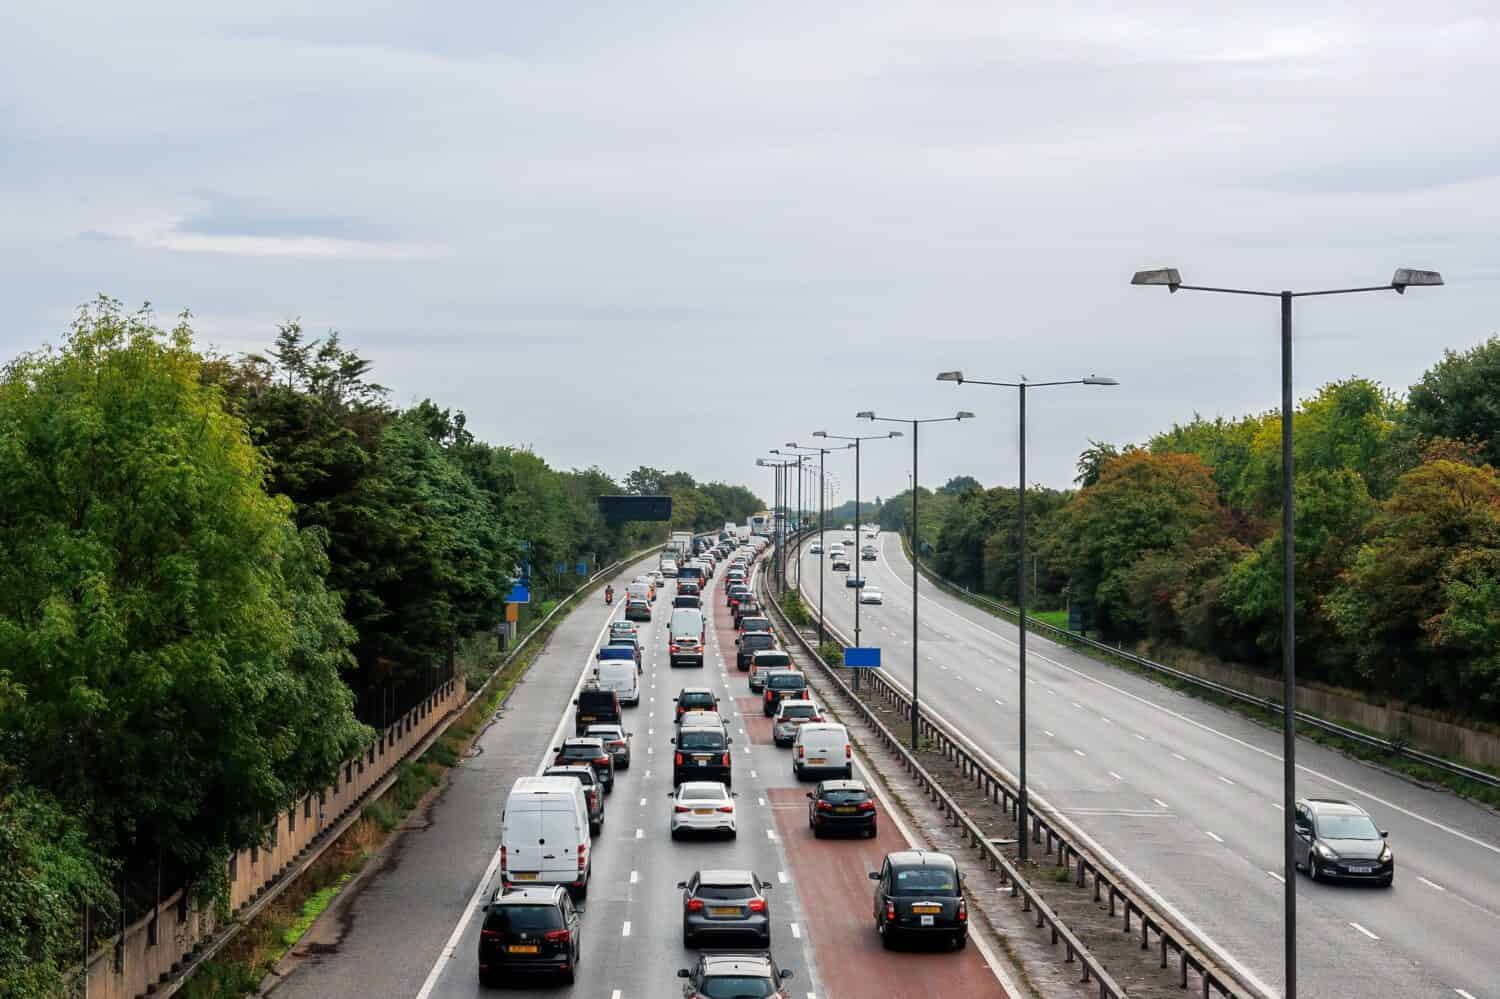 Traffico pesante e lento dell'ora di punta mattutina sull'autostrada M4, Londra